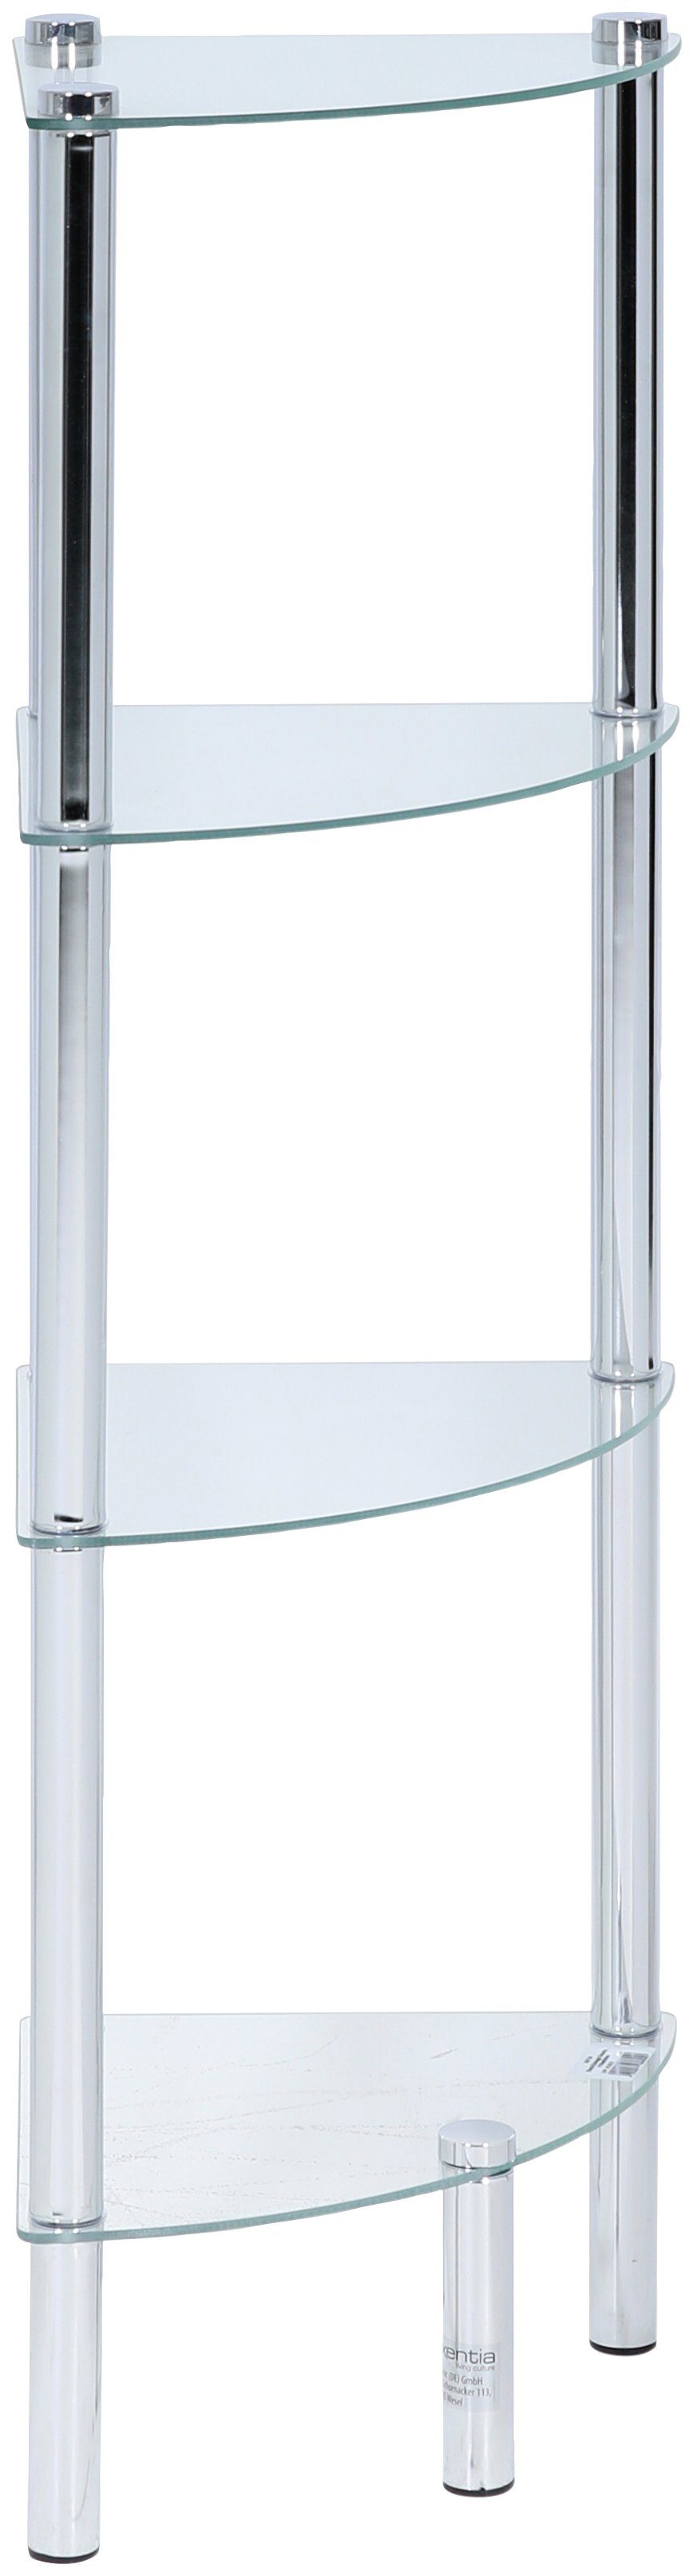 Glasböden, Standregal x cm, 4 5 x axentia 30 kg ca. 108 Maße: ca. 30 Gewicht: Solanio,